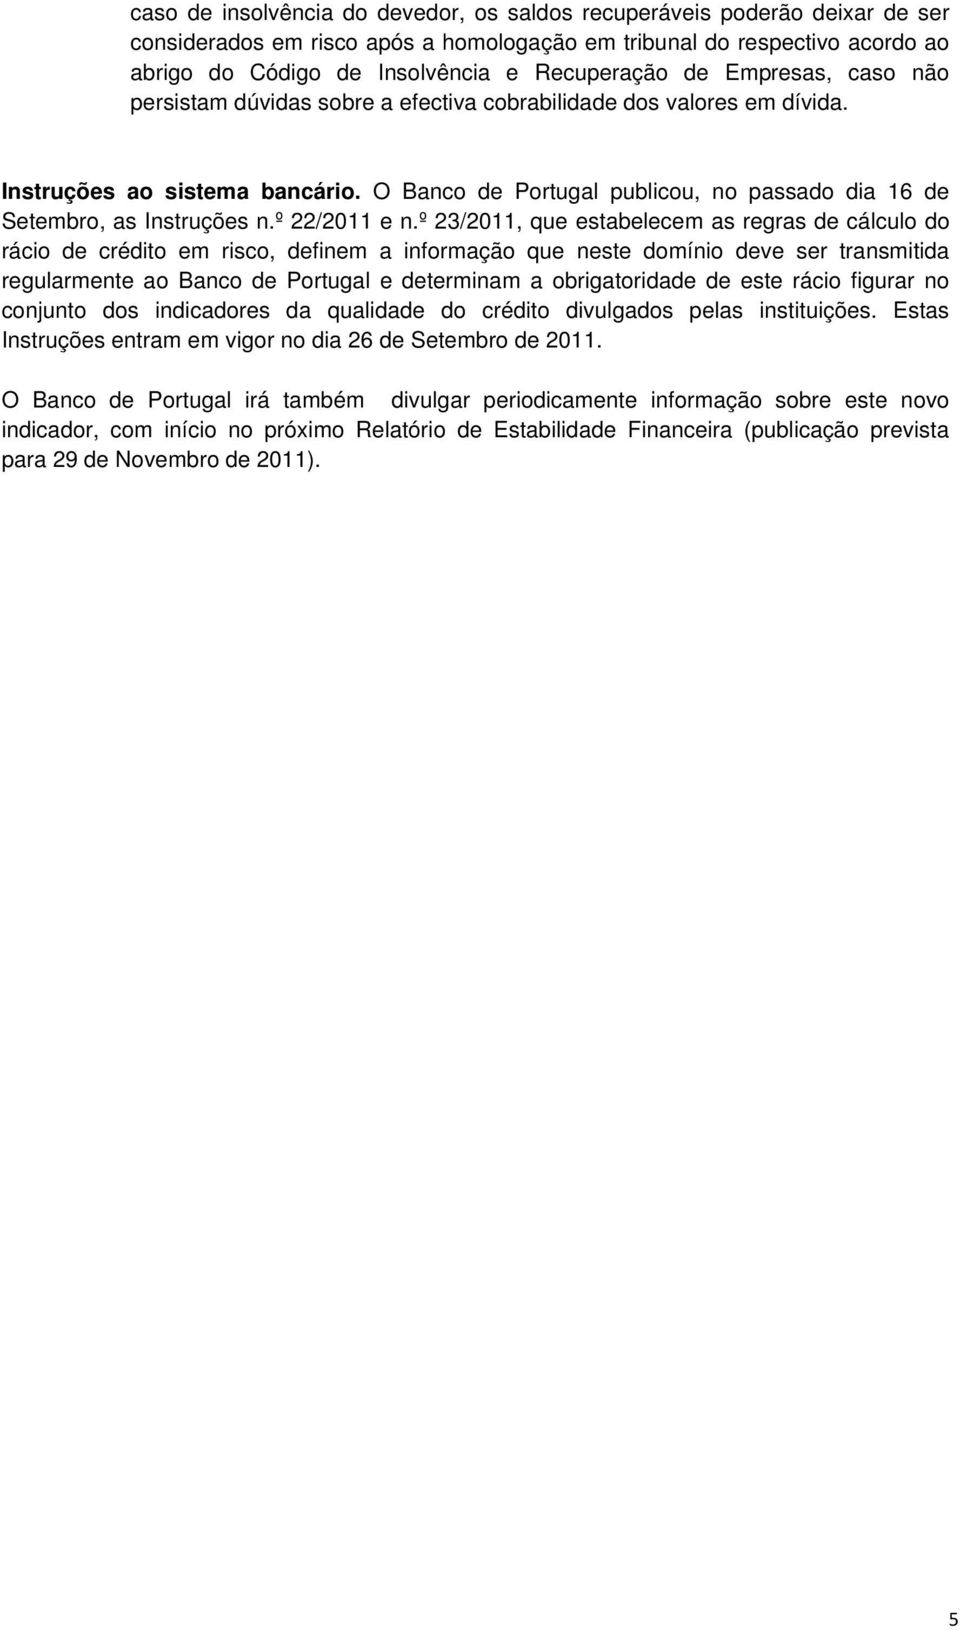 O Banco de Portugal publicou, no passado dia 16 de Setembro, as Instruções n.º 22/2011 e n.